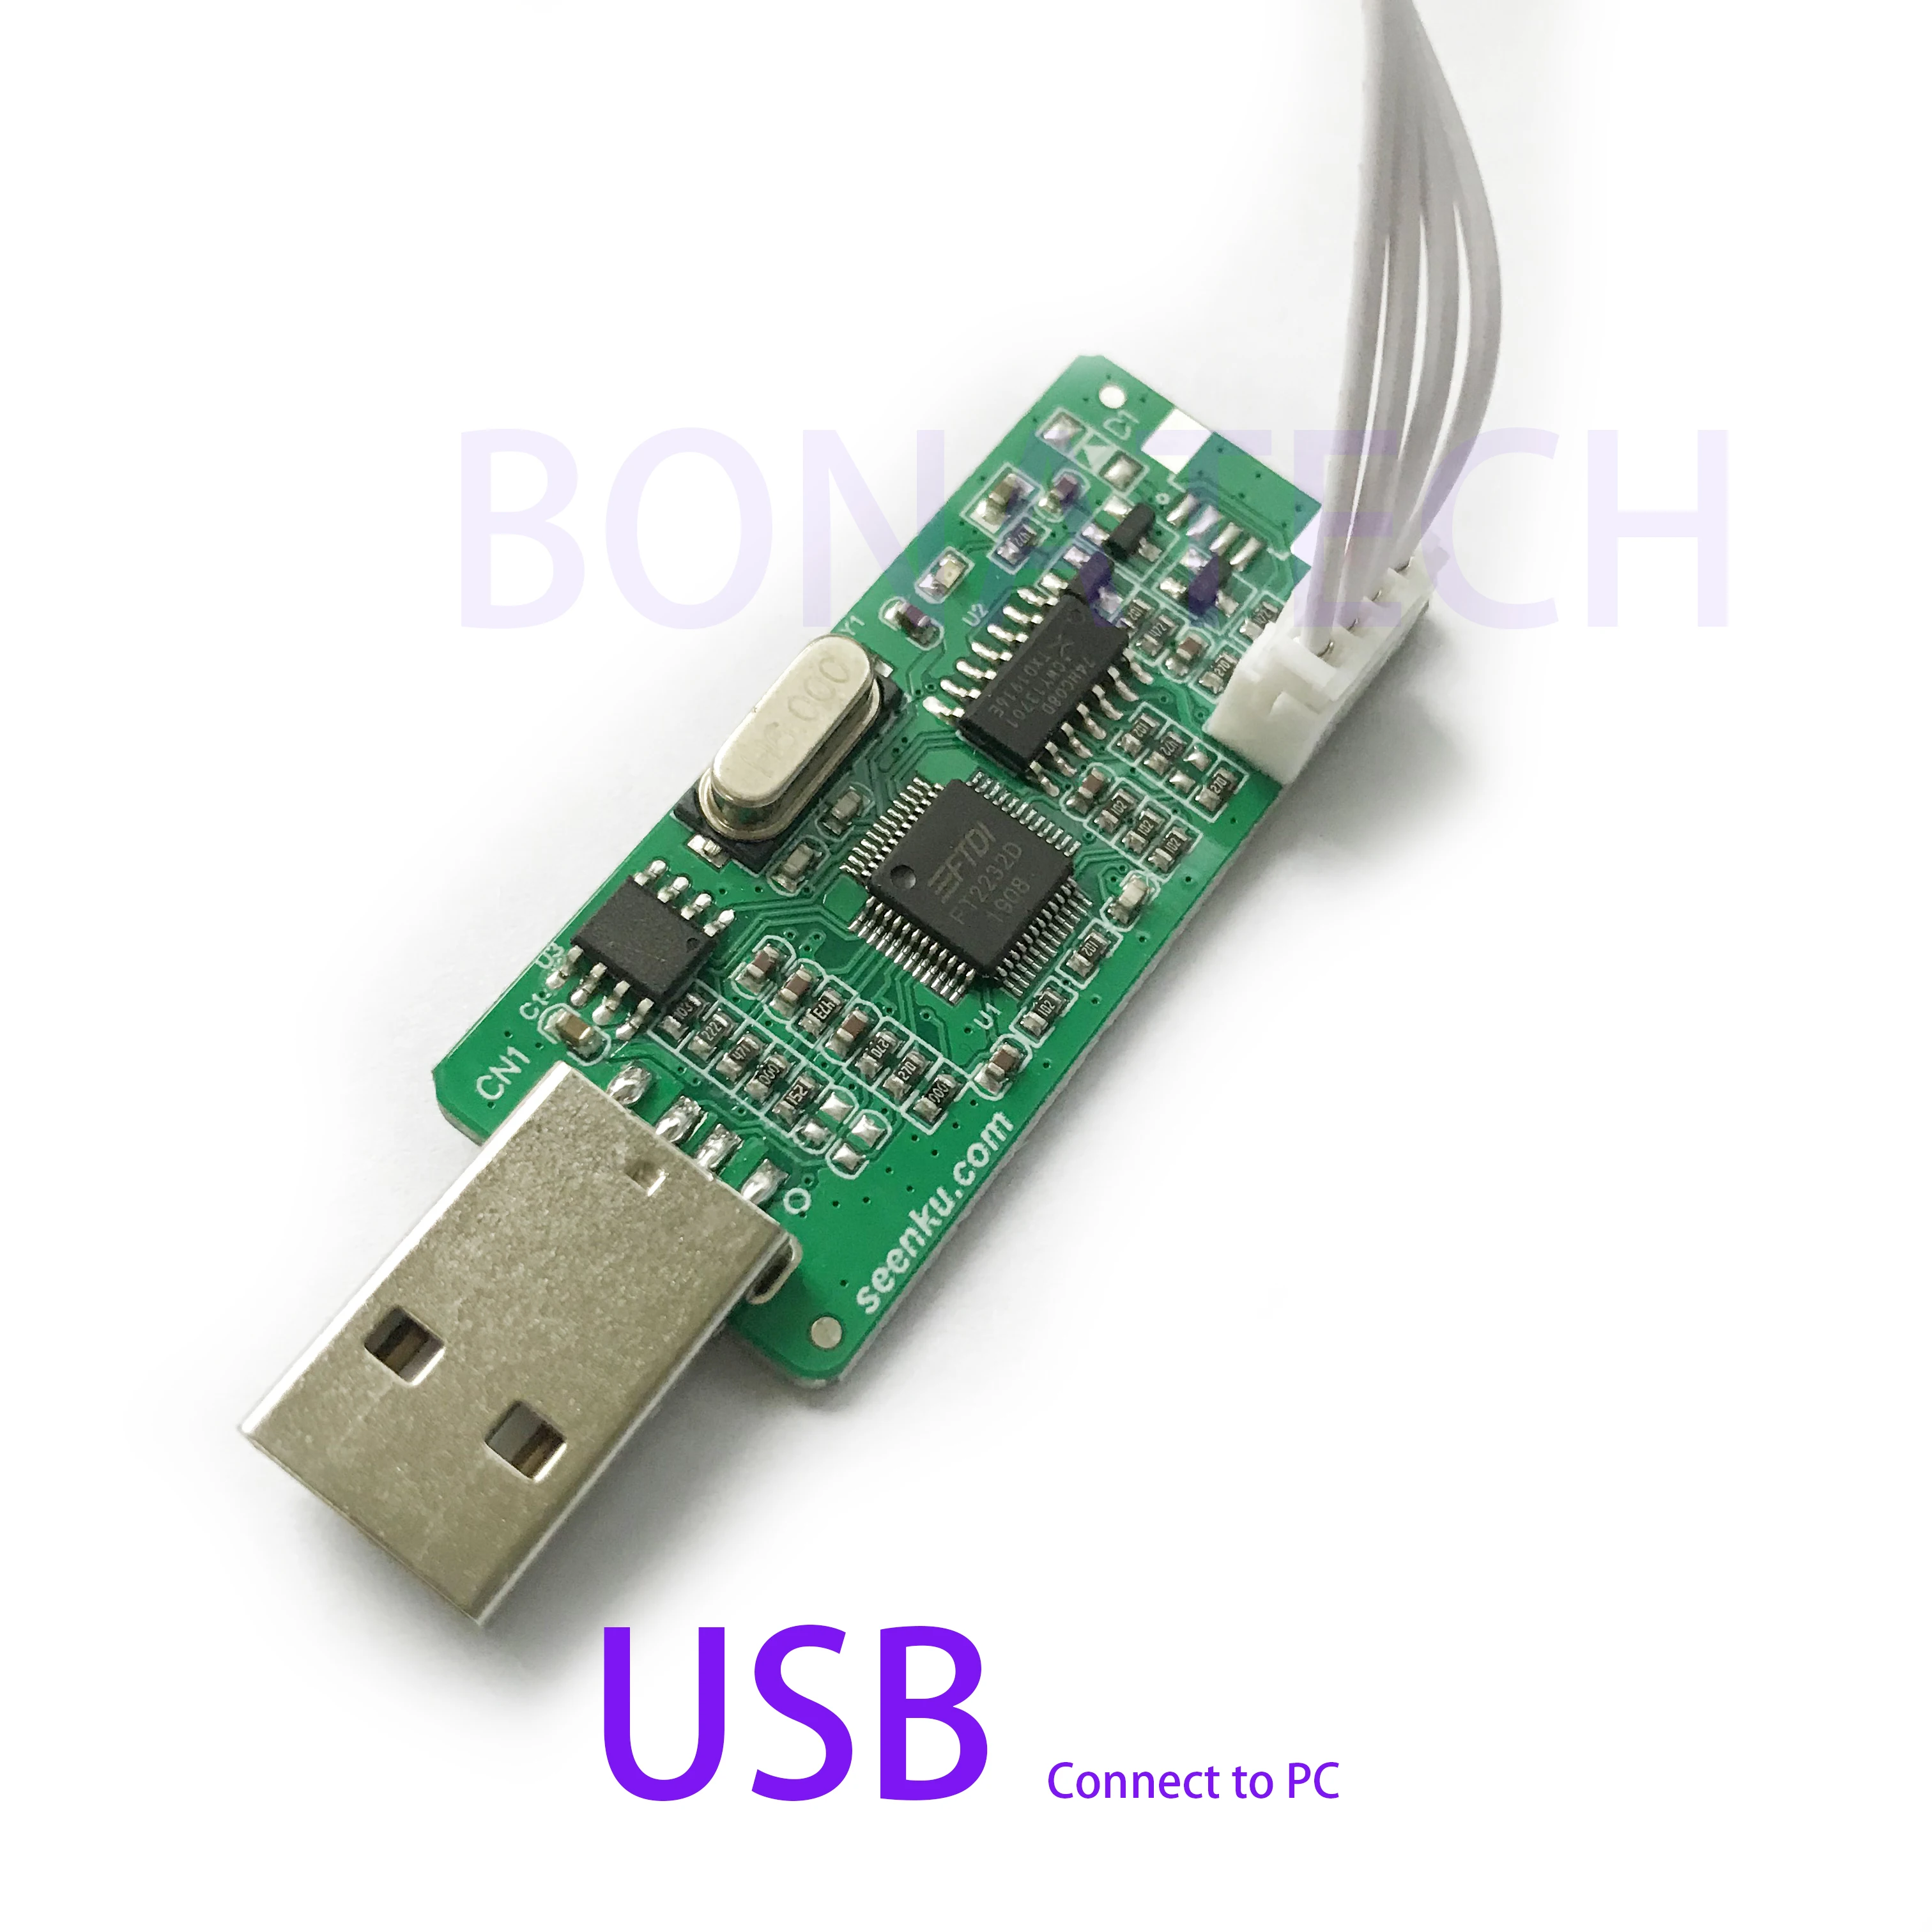 MStar derinimo įrankis USB upgrade tool VGA programuotojas už M. NT68676.2 palaiko 